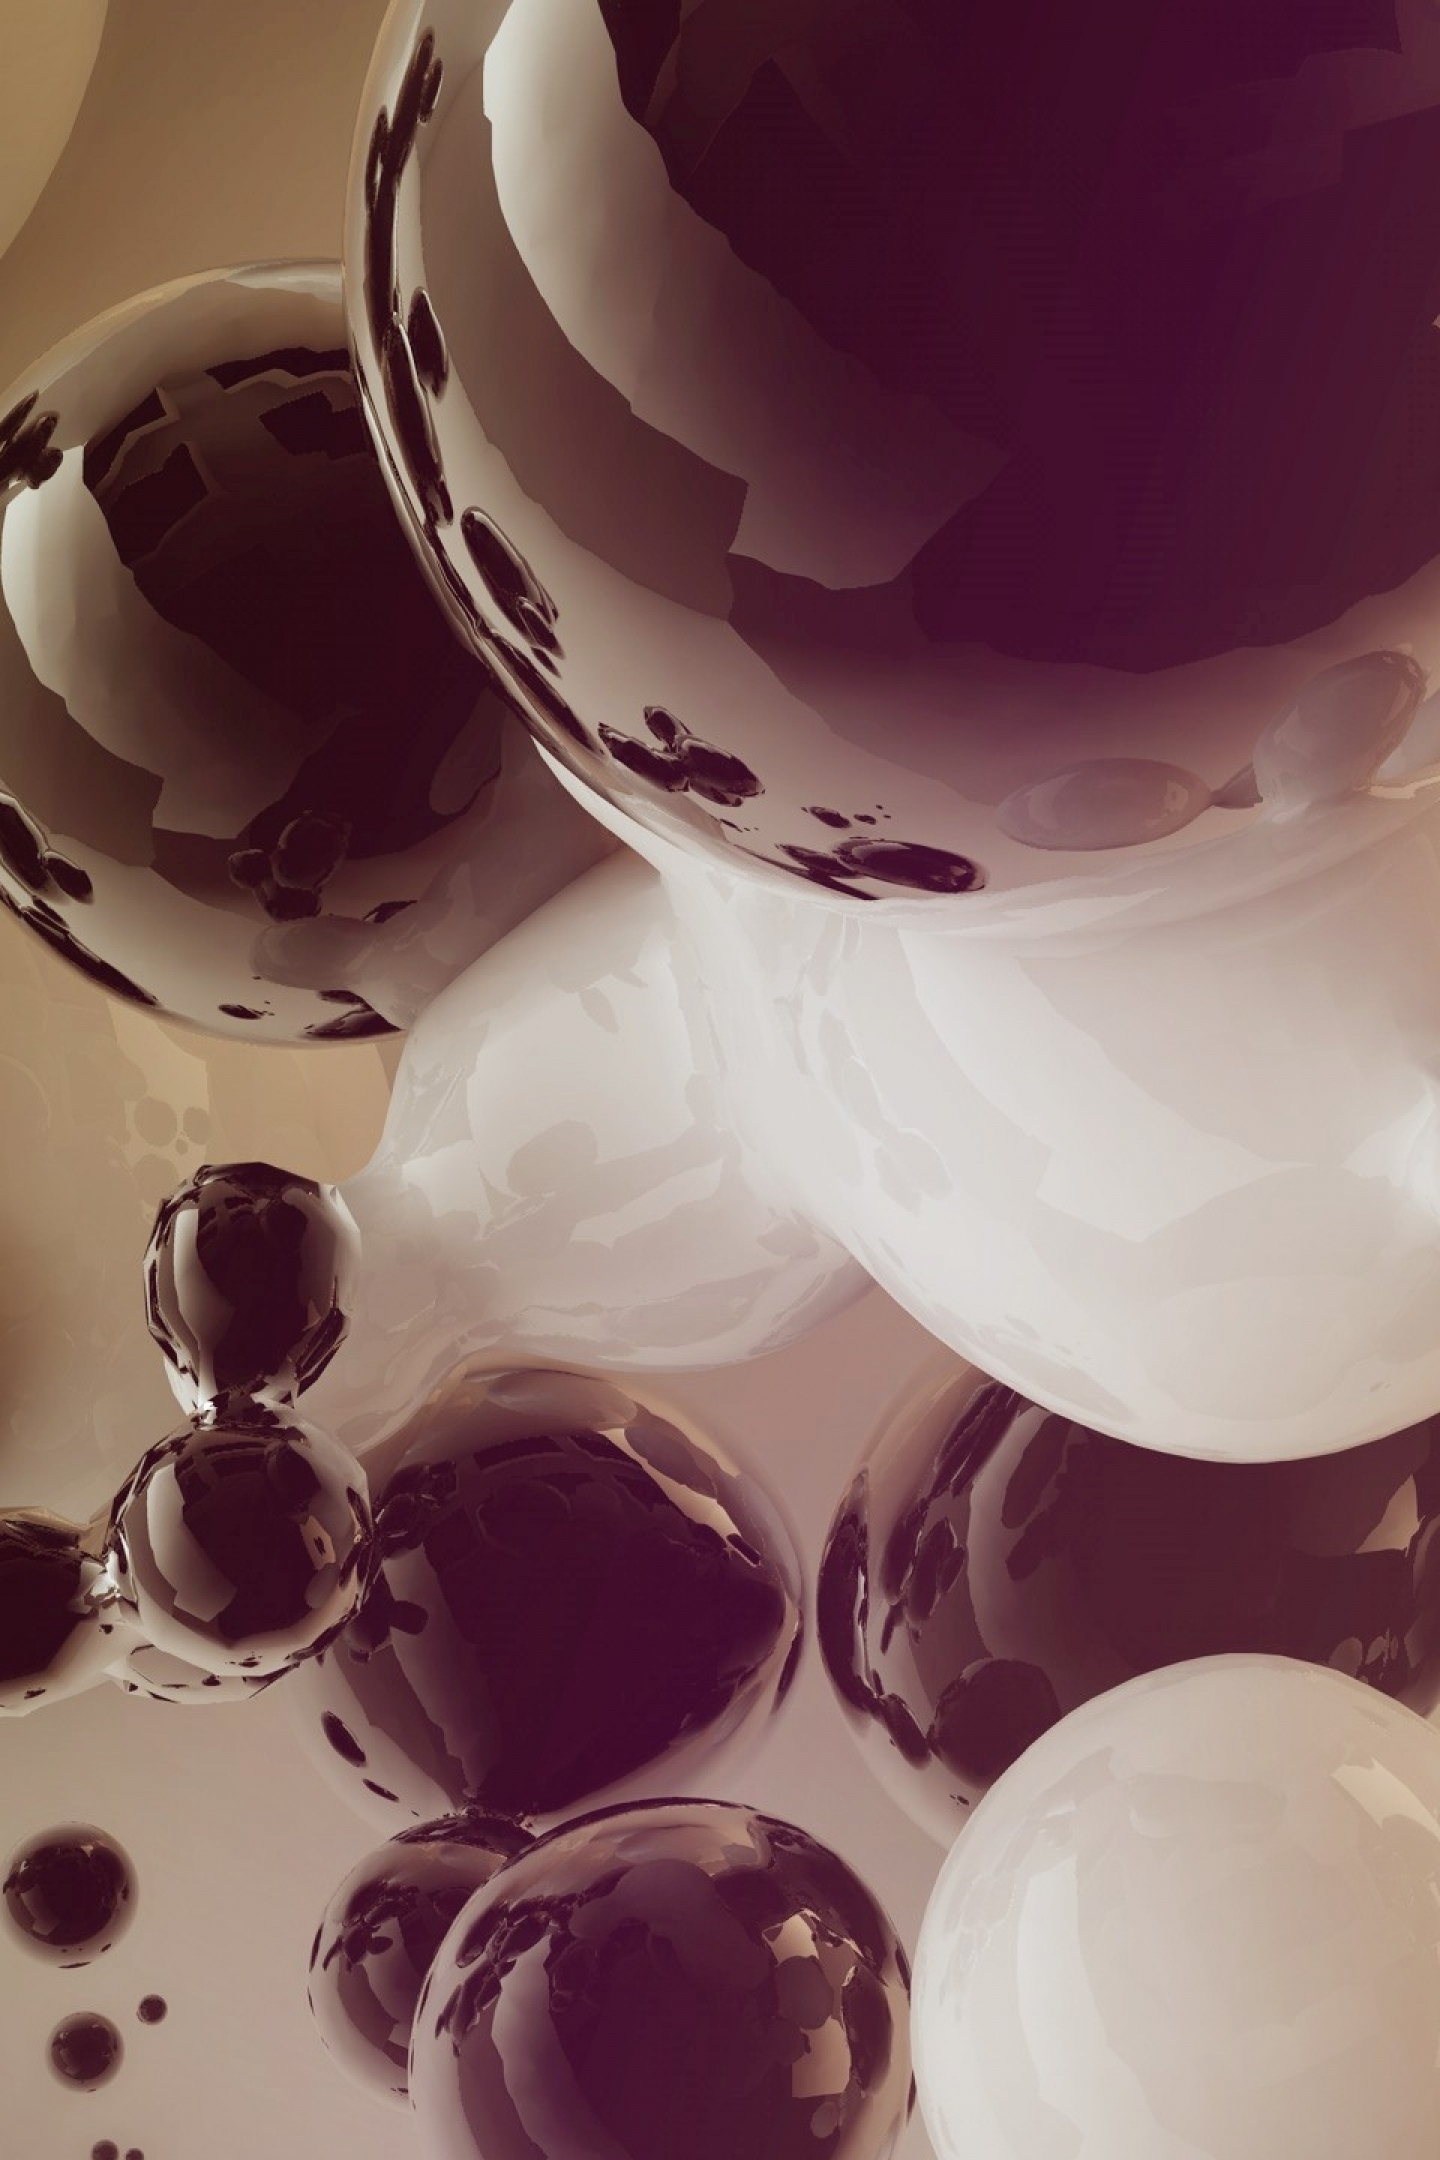 Картинка: Пузырьки, круг, тёмный, светлый, белый, отражение